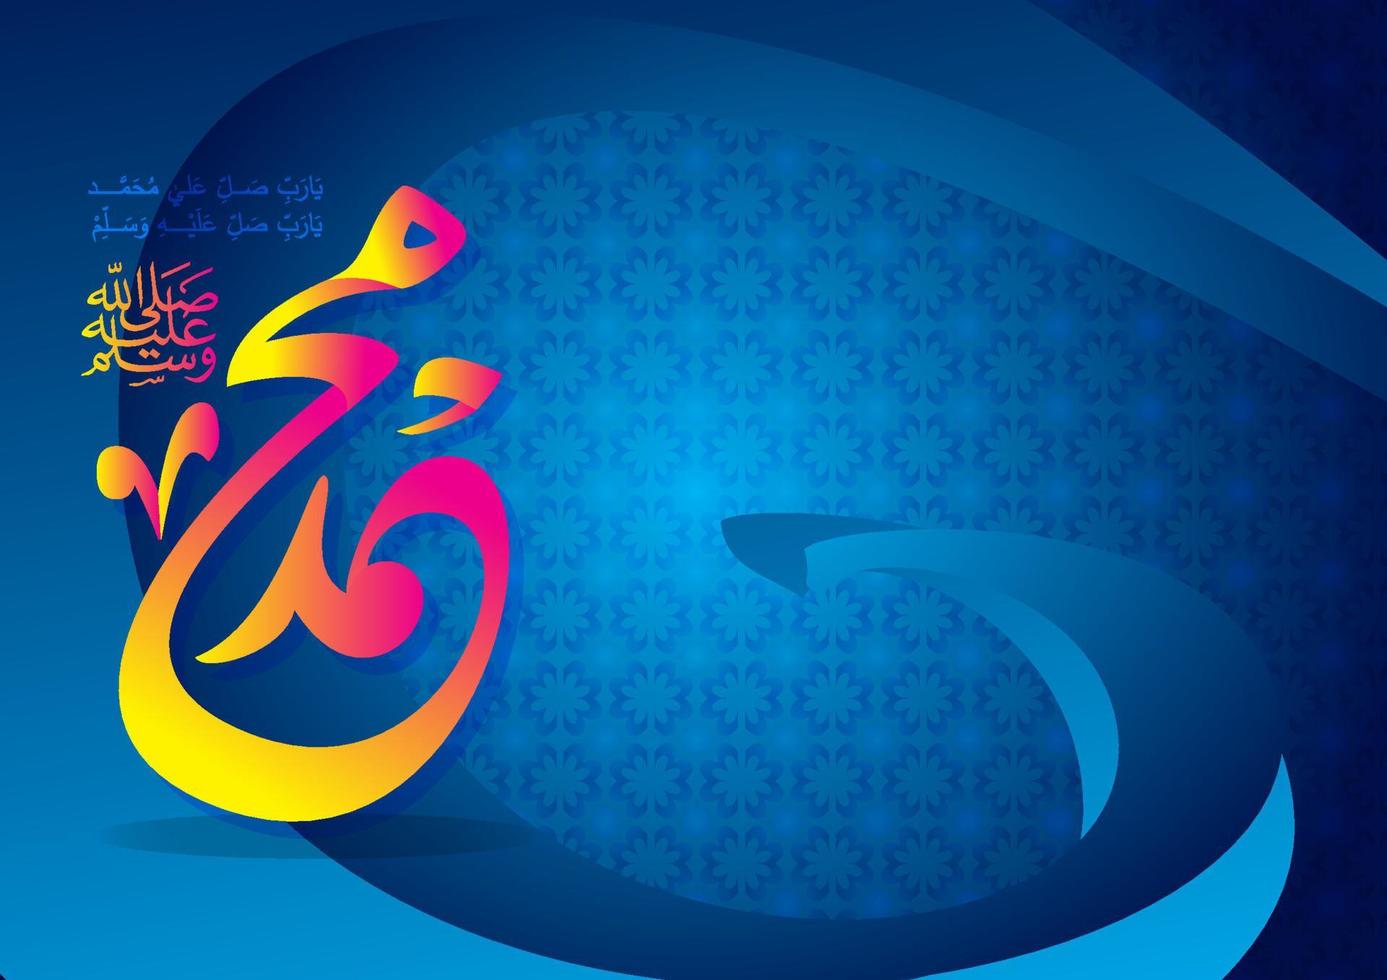 arabische en islamitische kalligrafie van de profeet mohammed vrede zij met hem traditionele en moderne islamitische kunst kan voor veel onderwerpen worden gebruikt, zoals mawlid, el nabawi. vertaling de profeet mohammed vector